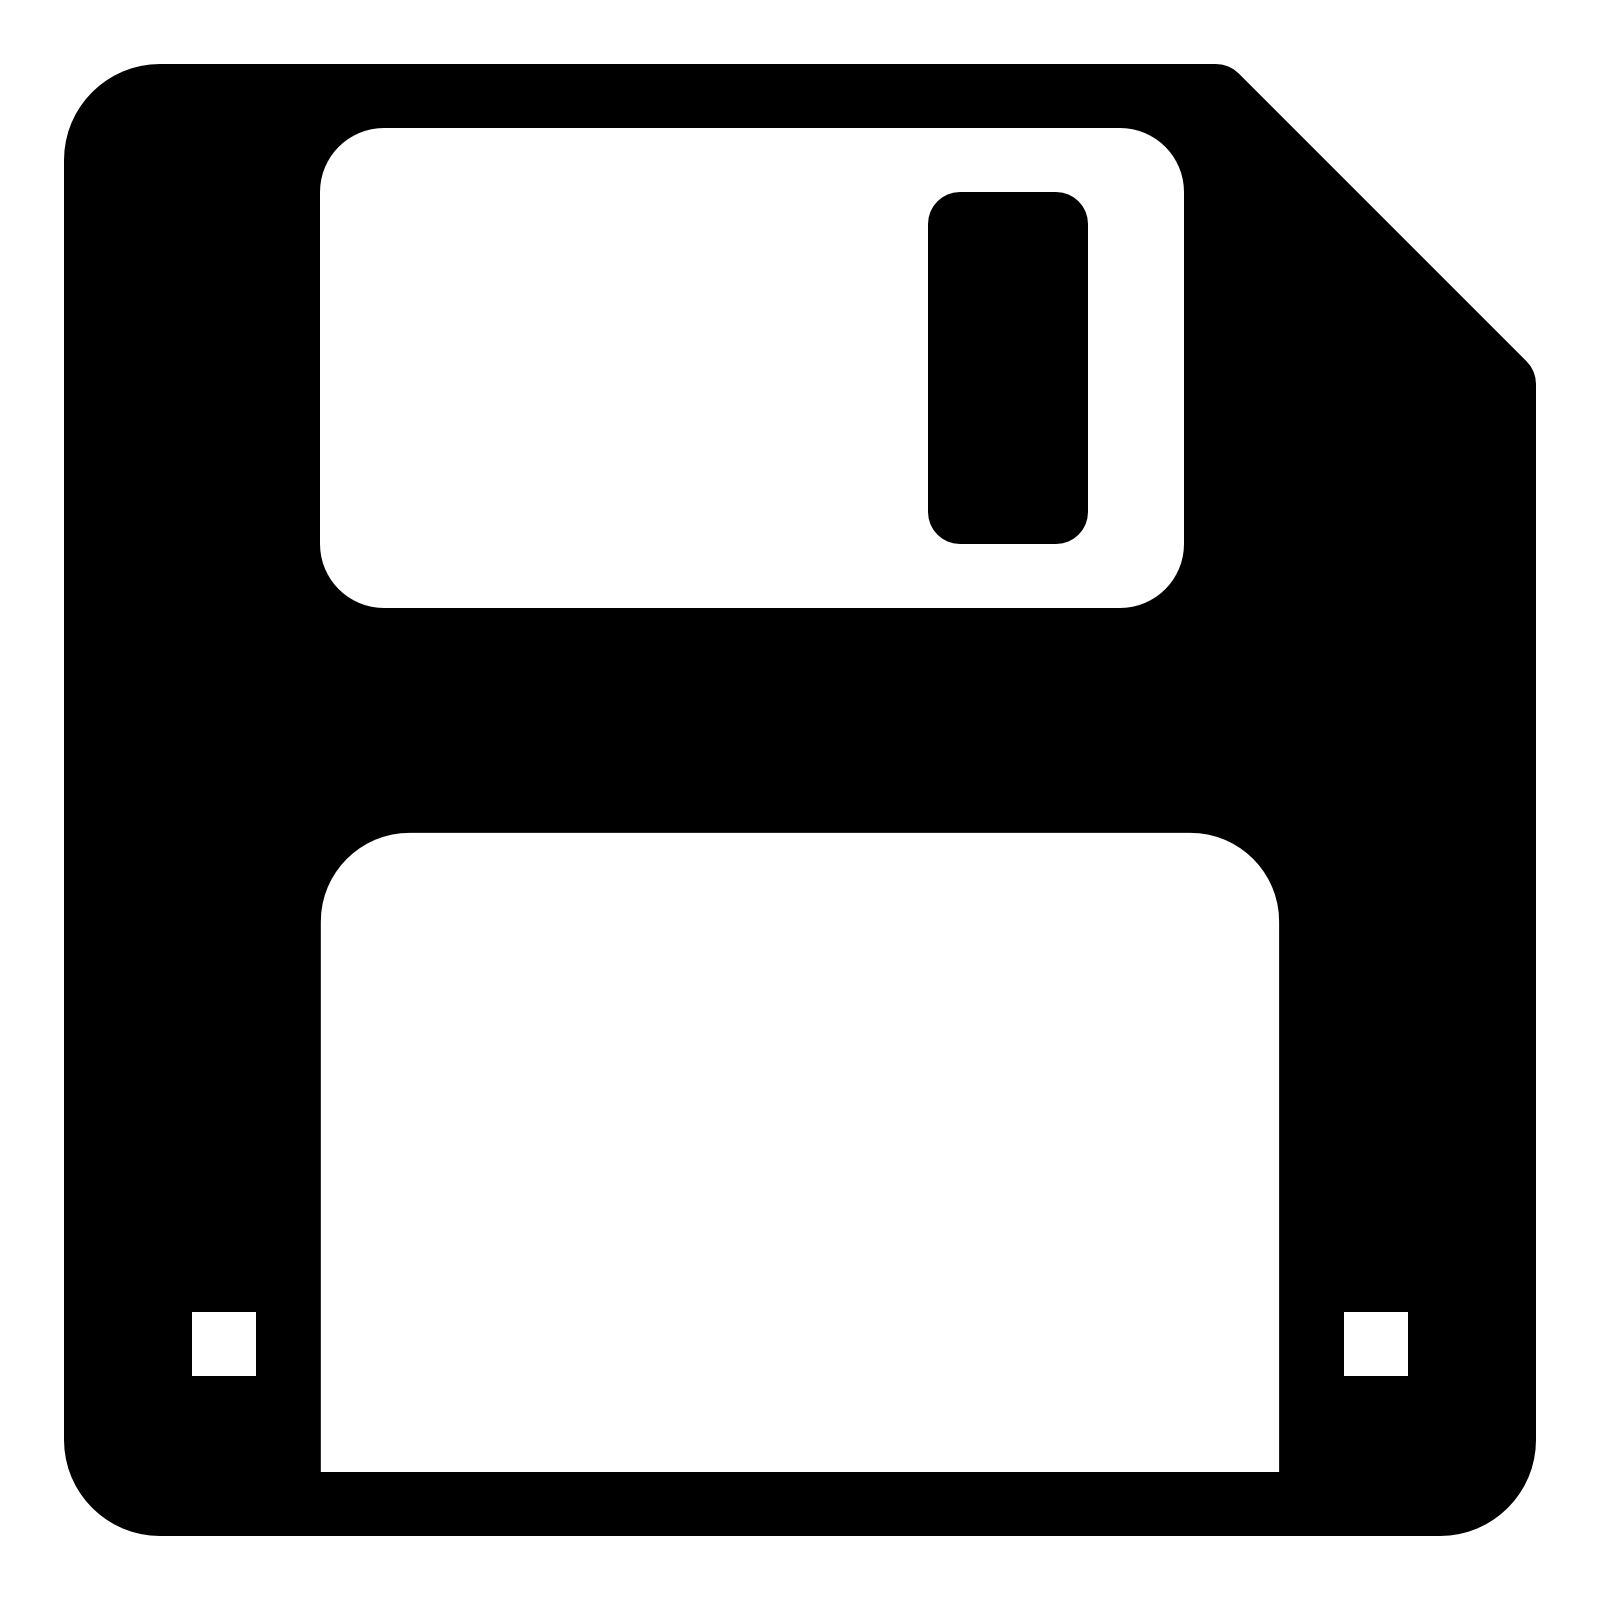 Téléchargement du fichier PNG bouton de sauvegarde